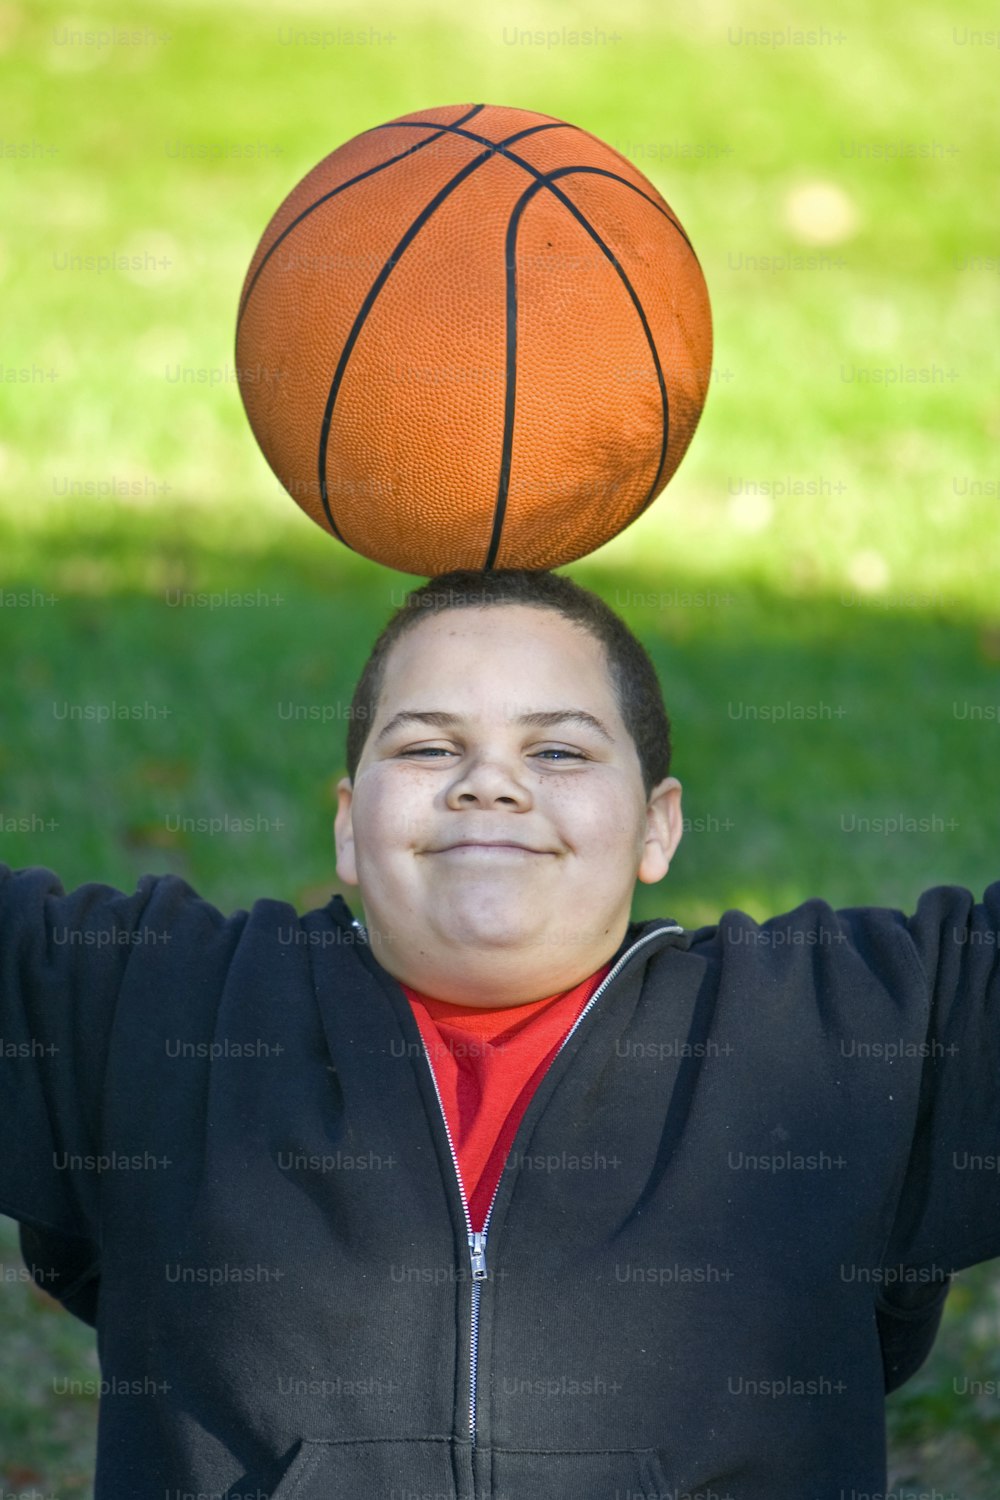 Garçon avec ballon de basket en équilibre sur la tête